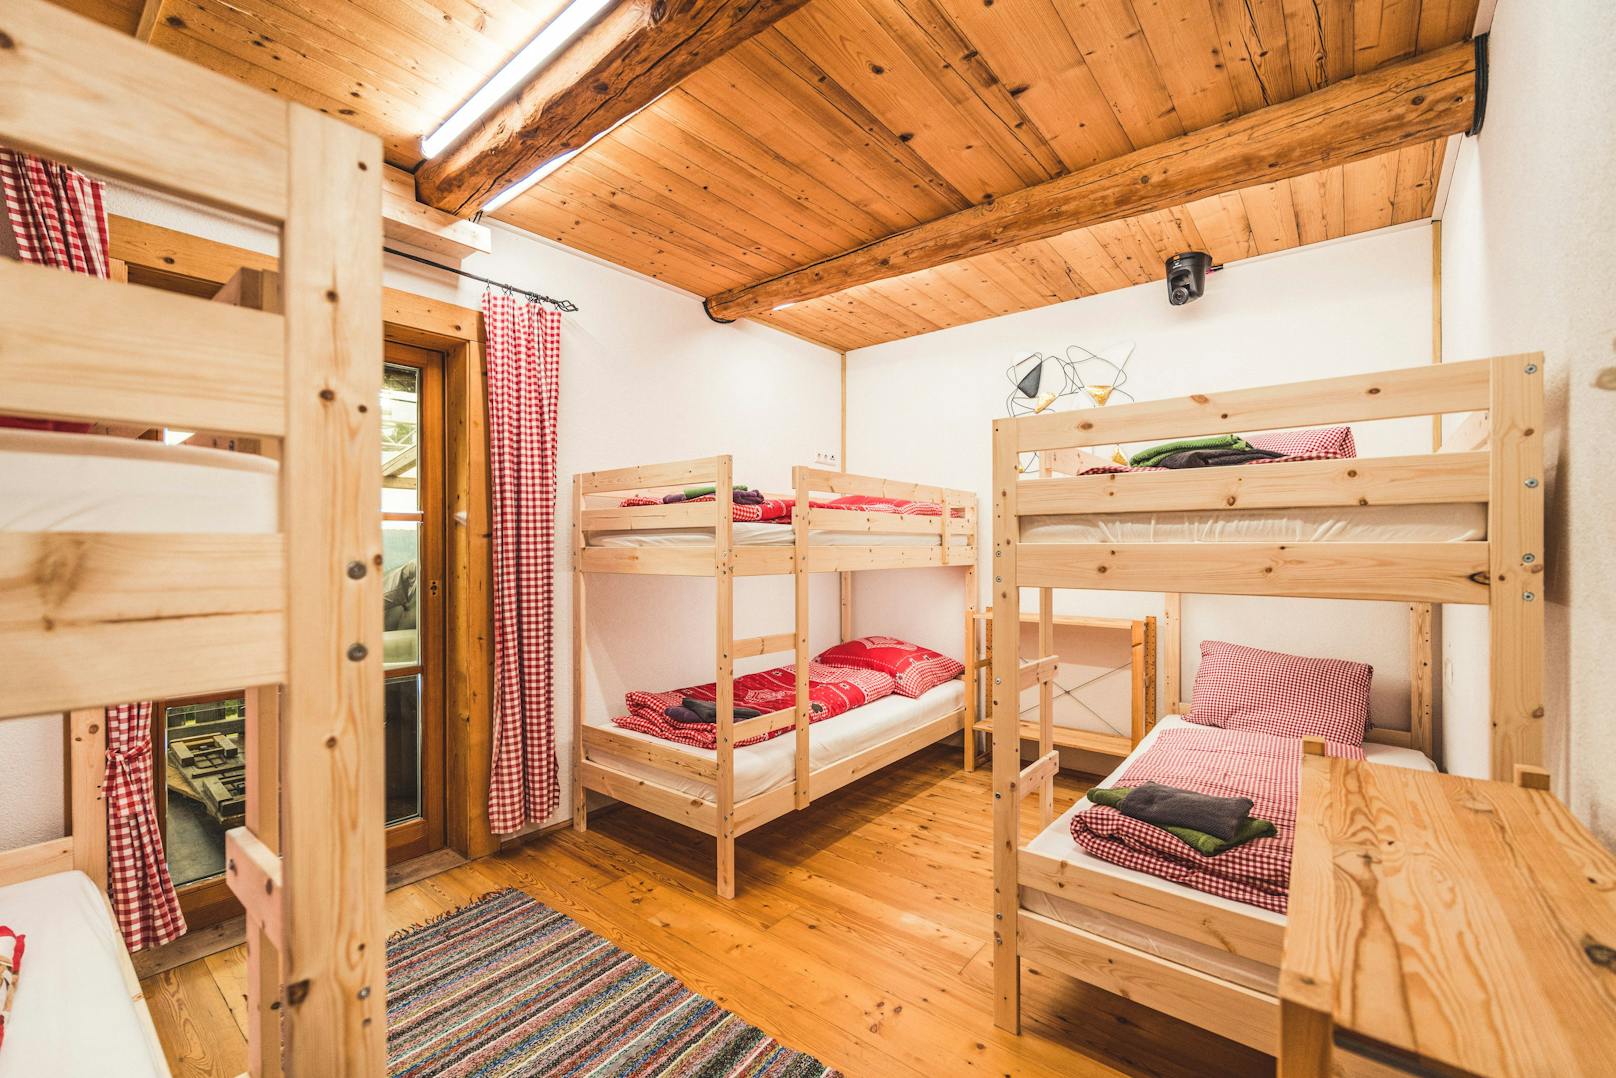 Statt glamourösen Hotel-Suites, gibt es bei "Forsthaus Rampensau" Stockbetten für die Teilnehmer.